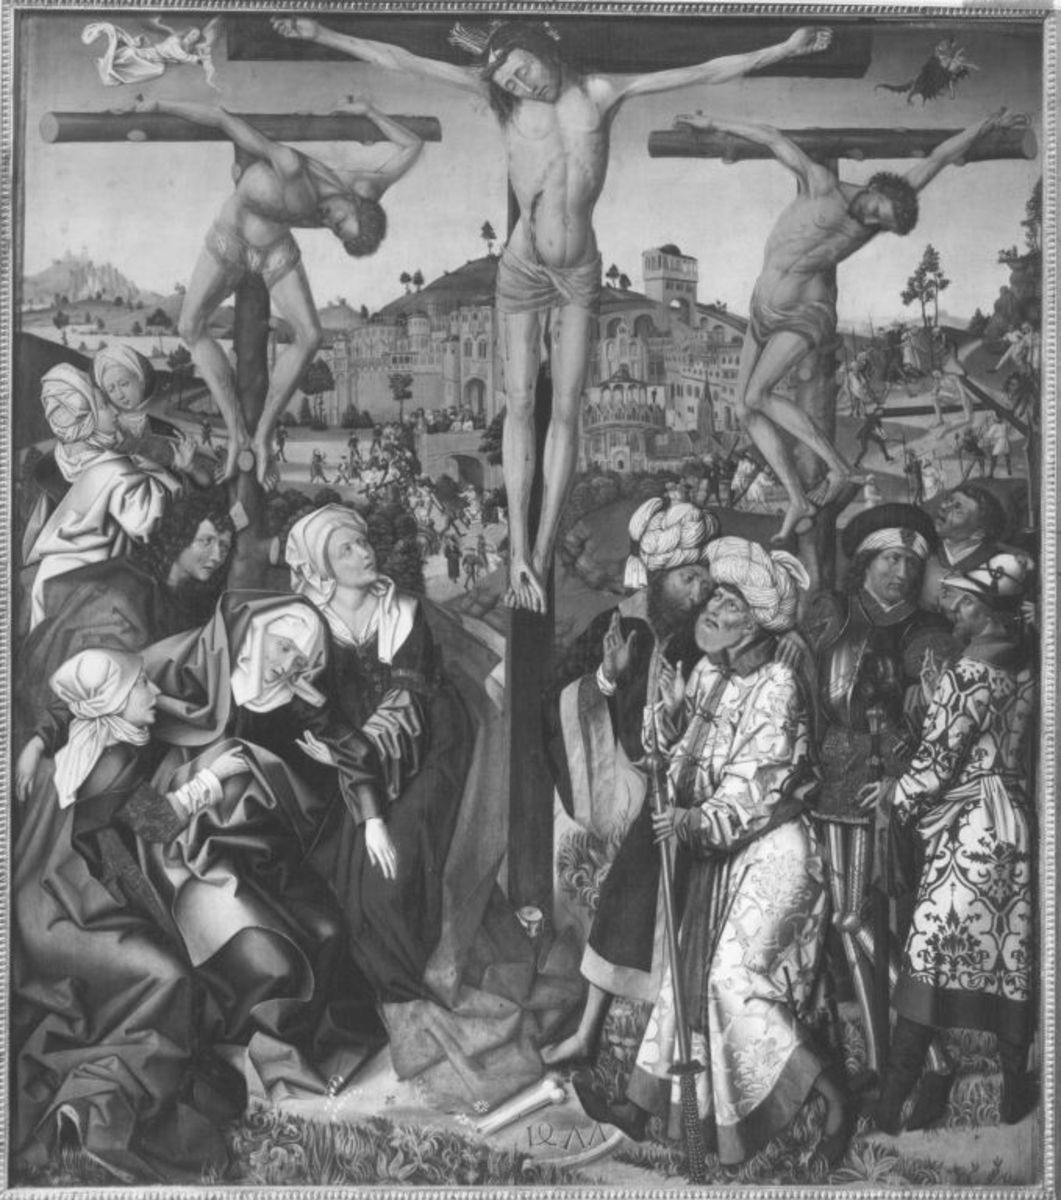 Meister von 1477 | Kreuzigung Christi | Displayed motifs: Wound, Veil, Crucifixion, Clothing, Thorn crown, Man, Angel, 